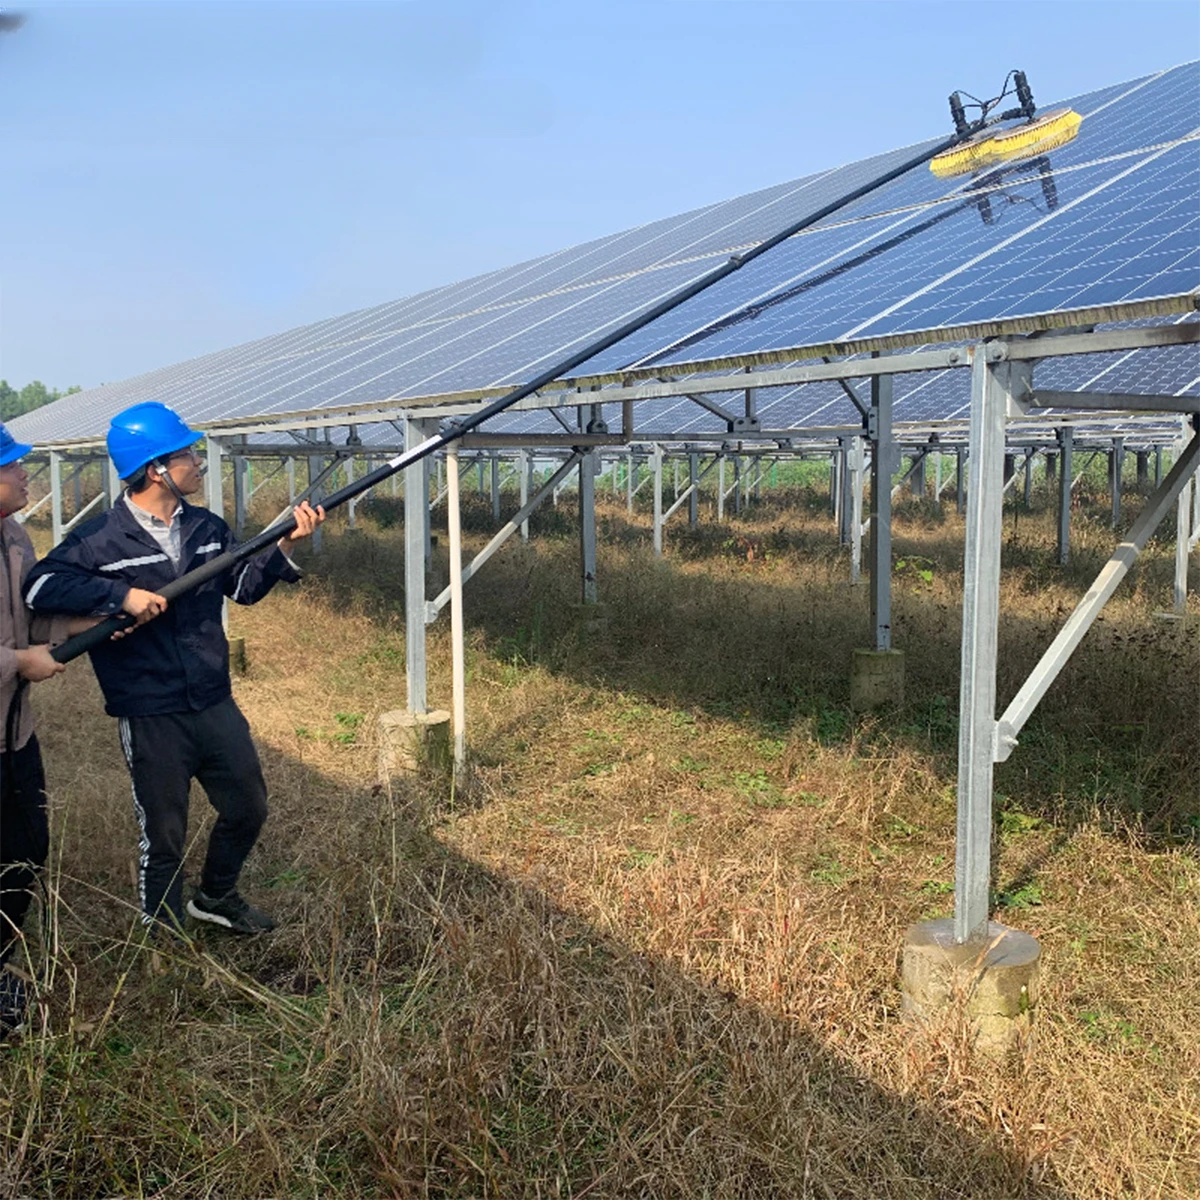 Оборудование для очистки солнечных панелей Вращающаяся Солнечная Электрическая Фотоэлектрическая щетка длиной 7,2 м Для очистки солнечных панелей на солнечной ферме